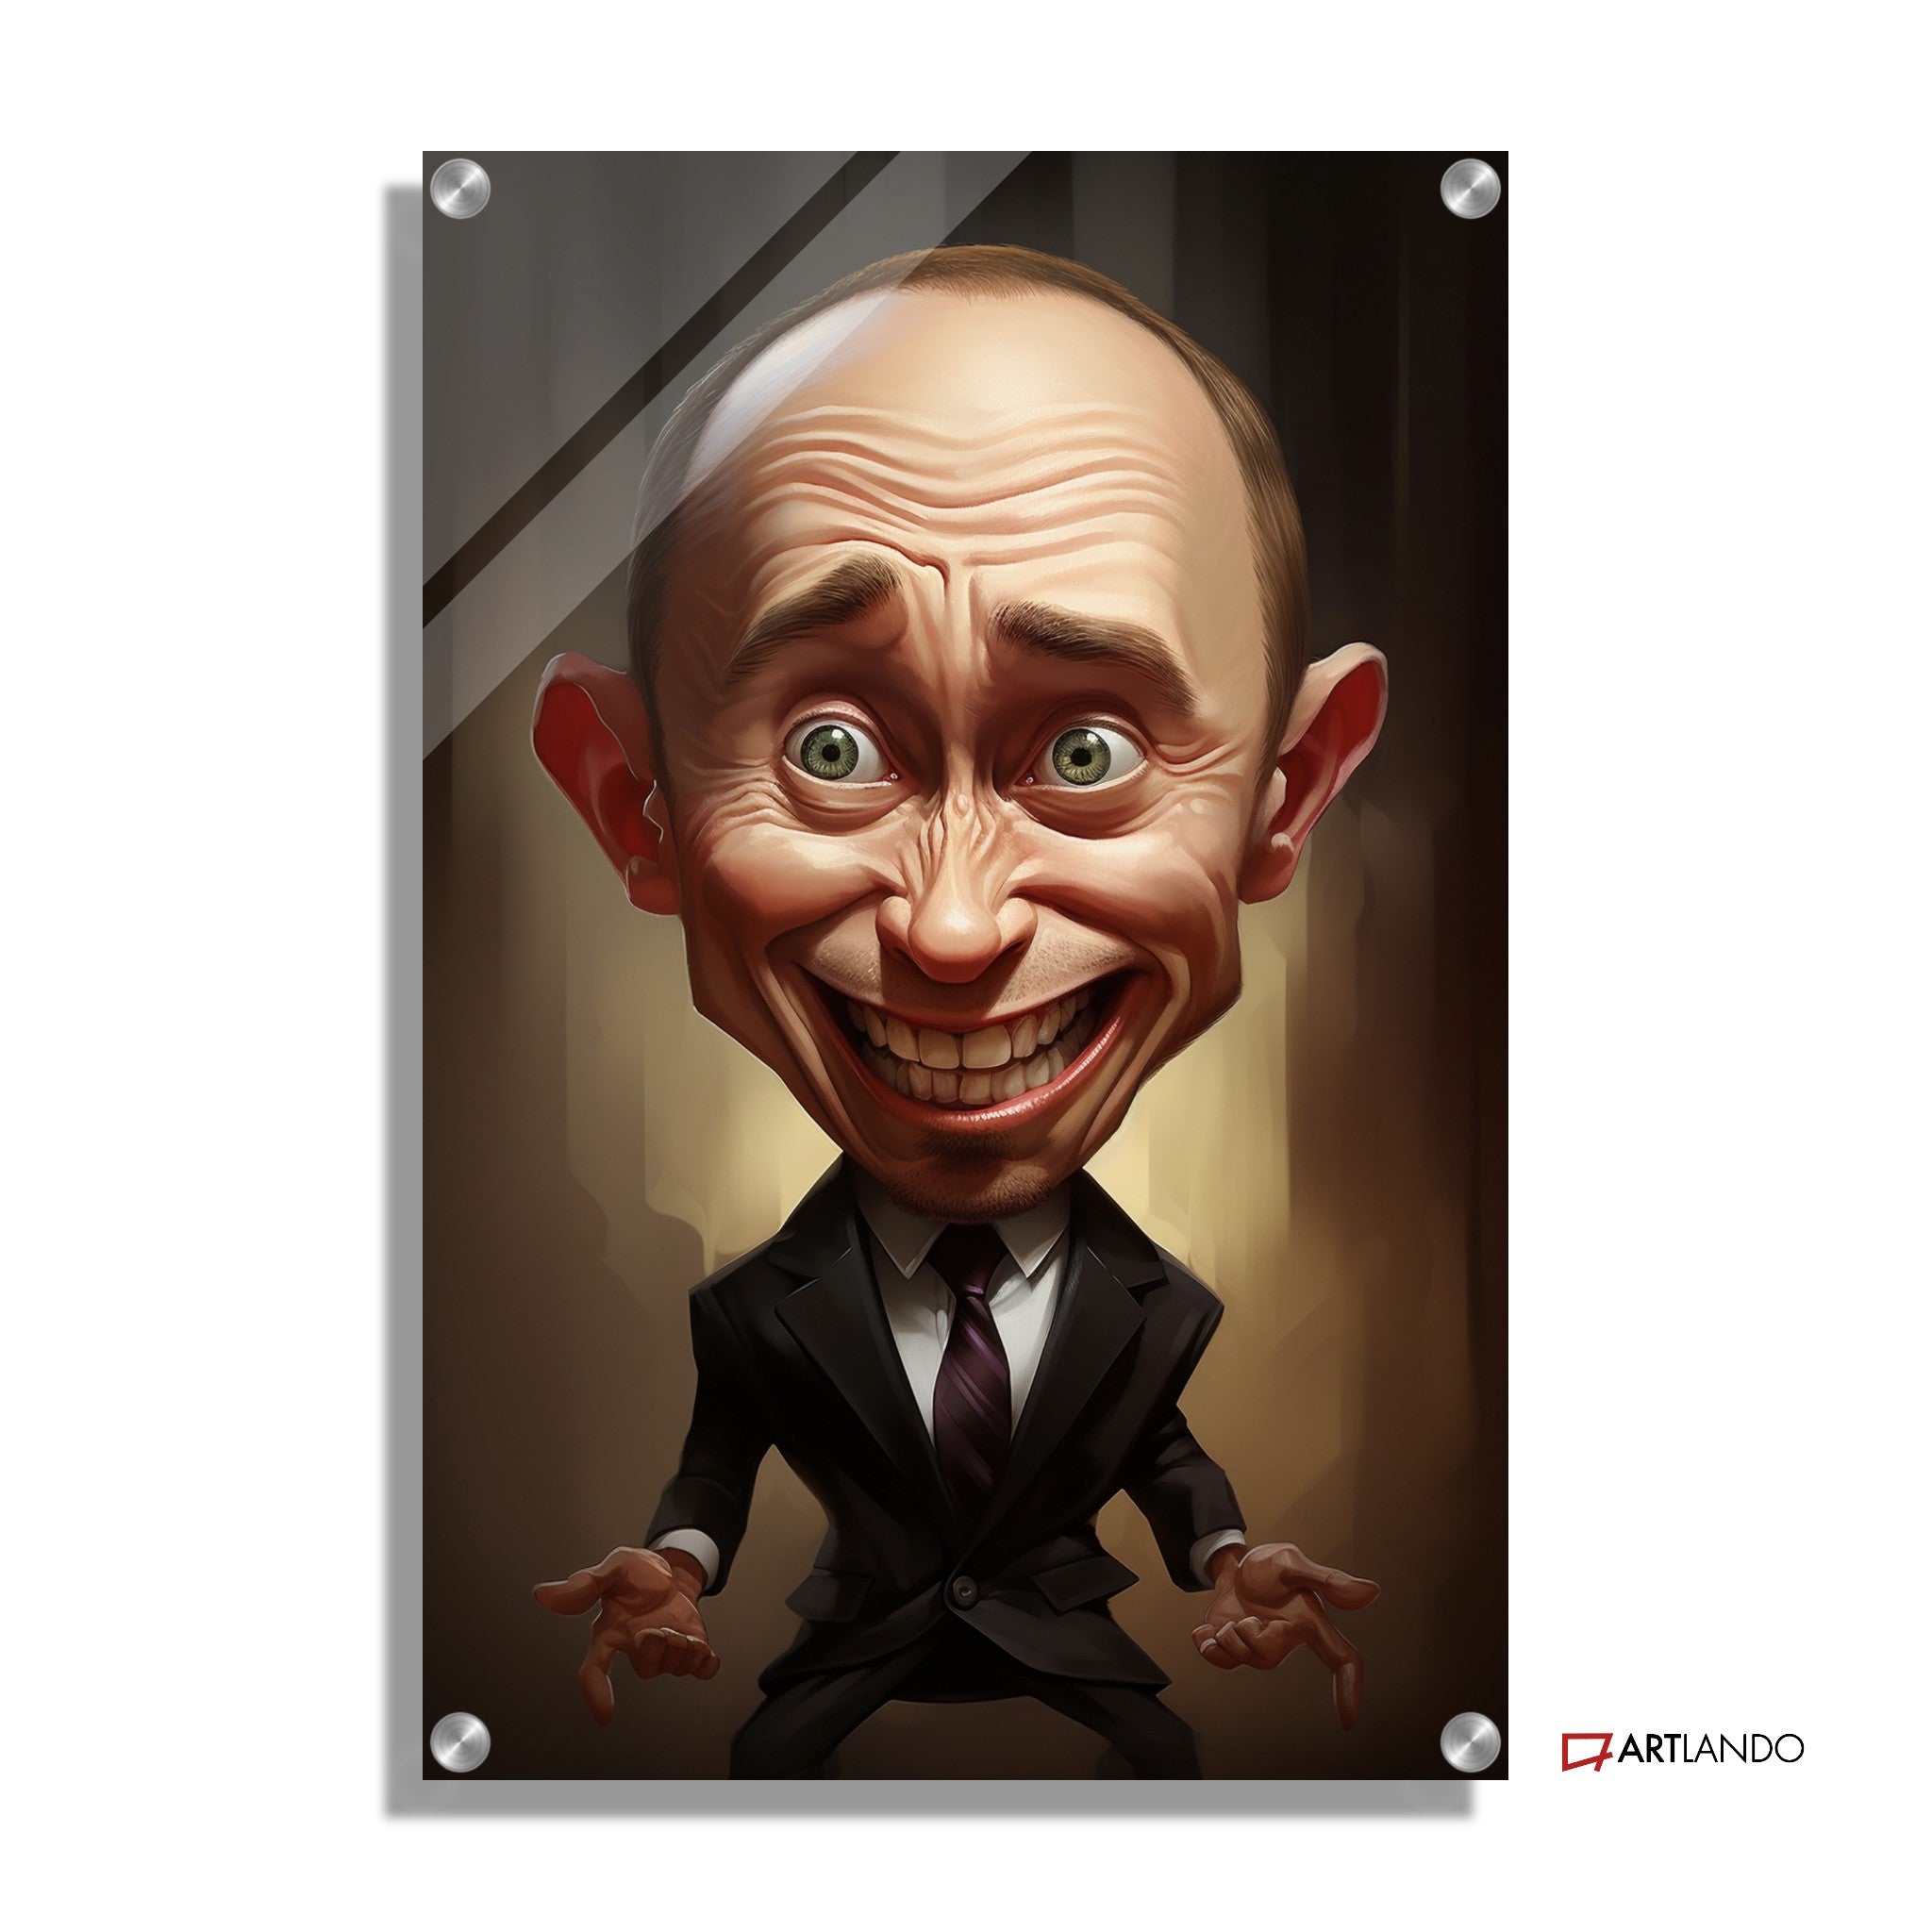 Überspitzte Karikatur von Vladimir Putin